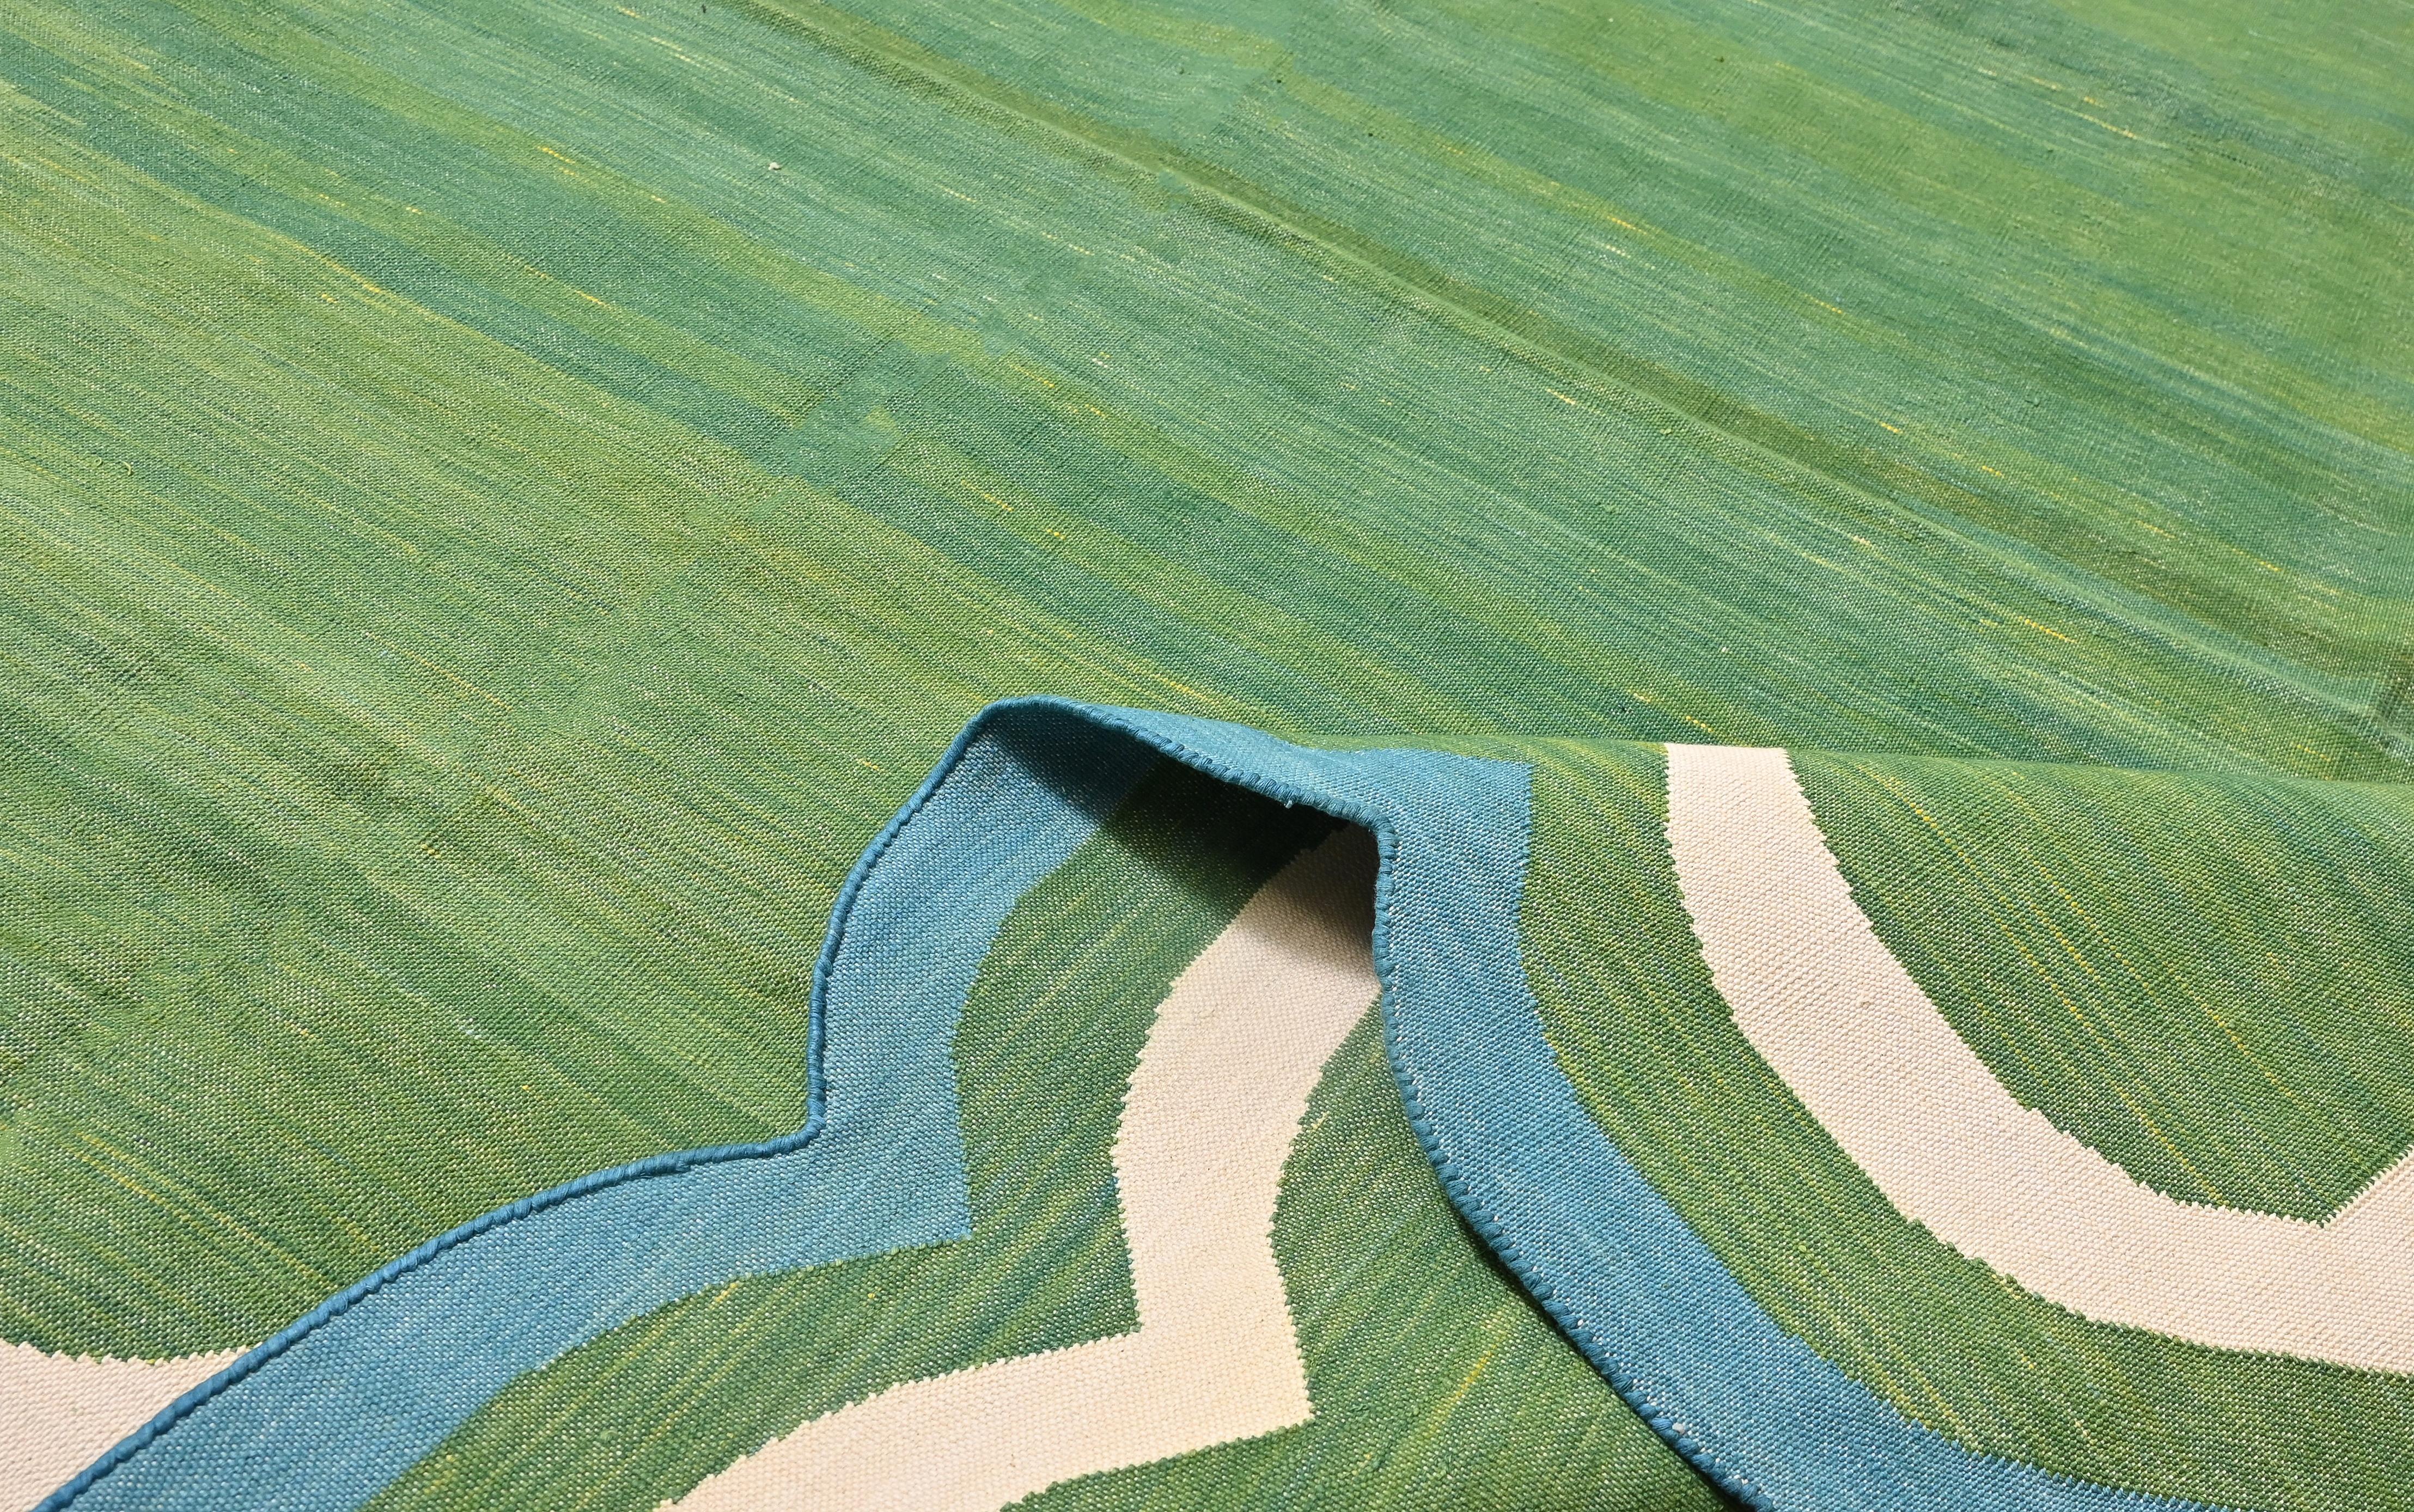 Baumwolle pflanzlich gefärbt Waldgrün, Creme und Teal Blau Zwei Seiten gewellte Teppich-6'x9' 
(Jakobsmuscheln laufen auf allen 9 Fußseiten)
Diese speziellen flachgewebten Dhurries werden aus 15-fachem Garn aus 100% Baumwolle handgewebt. Aufgrund